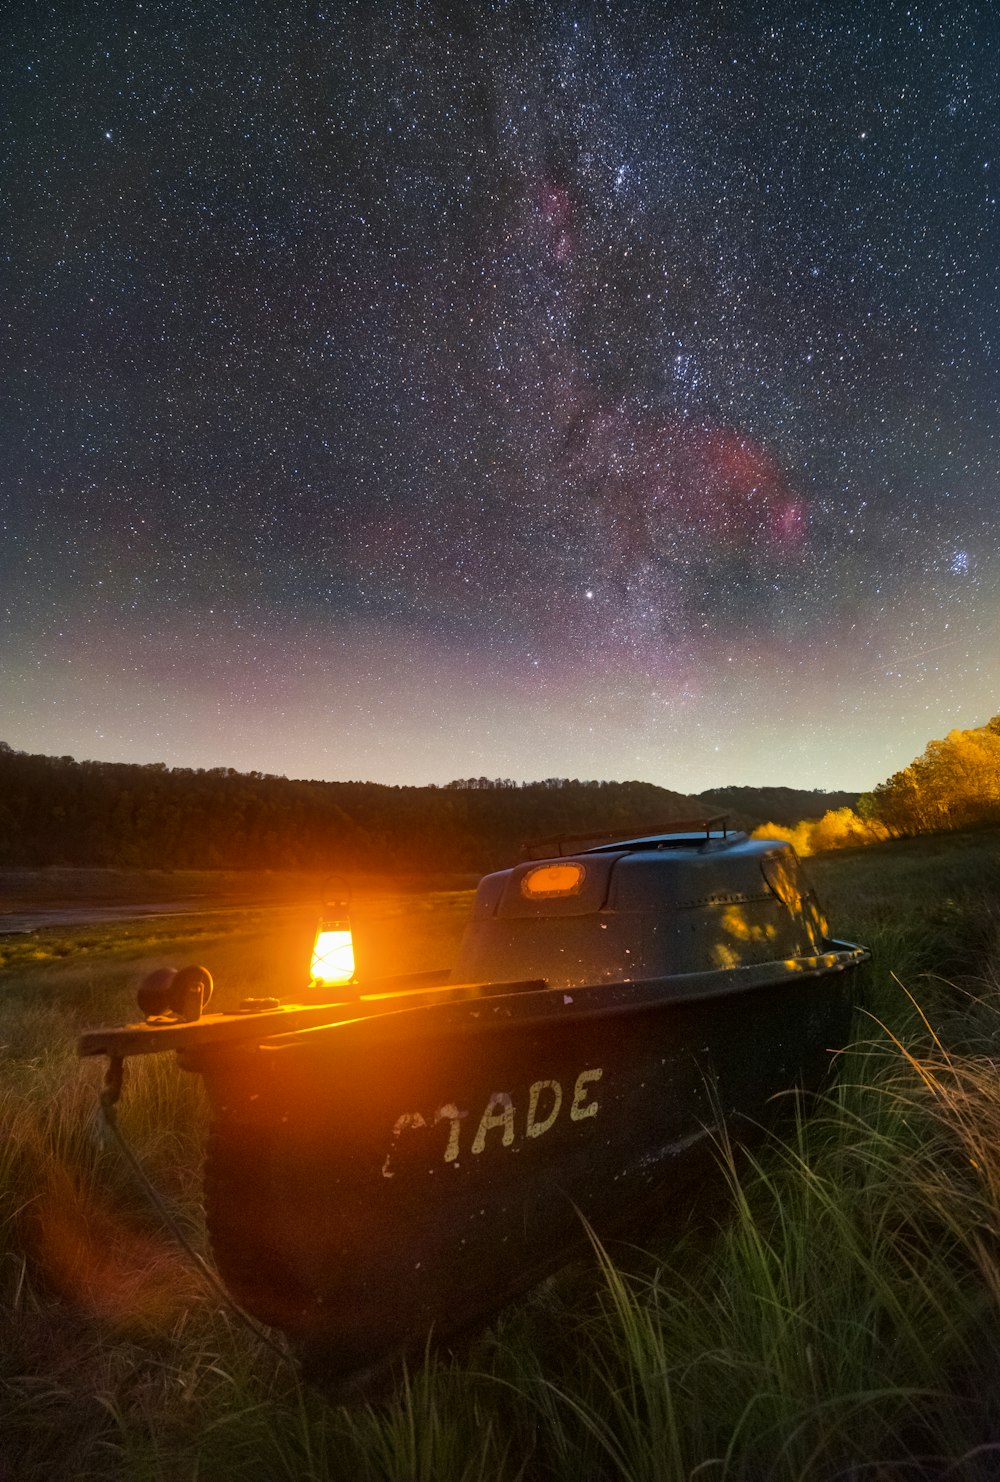 Ein Boot, das auf einem üppigen grünen Feld unter einem Nachthimmel sitzt